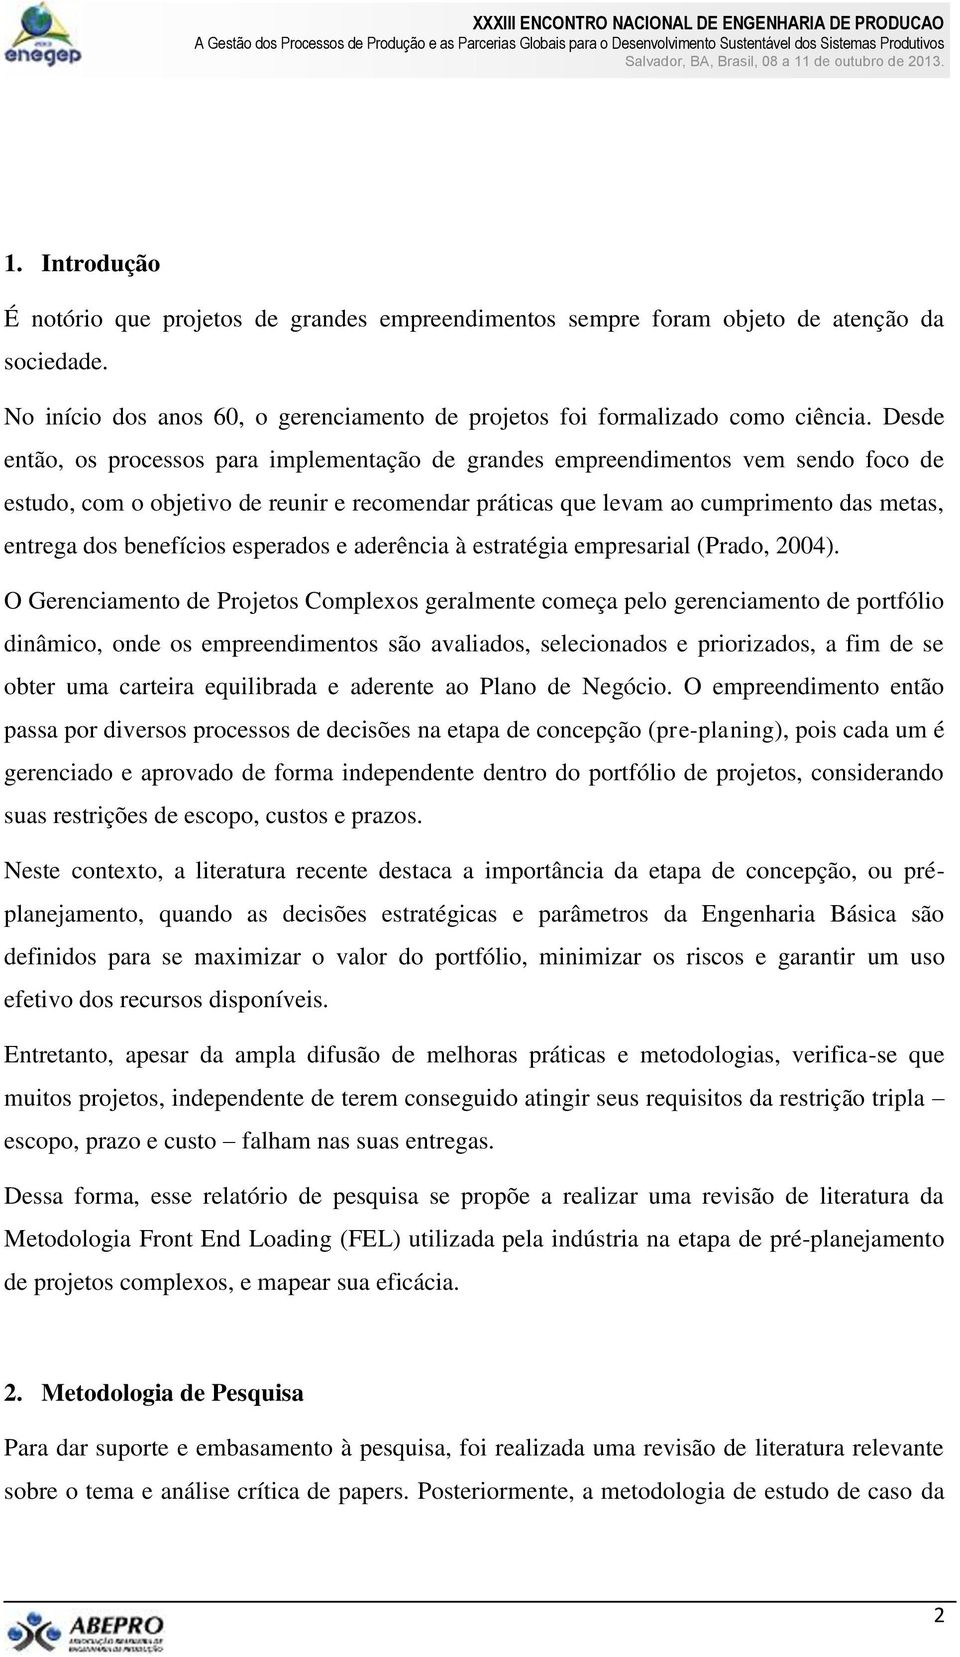 benefícios esperados e aderência à estratégia empresarial (Prado, 2004).